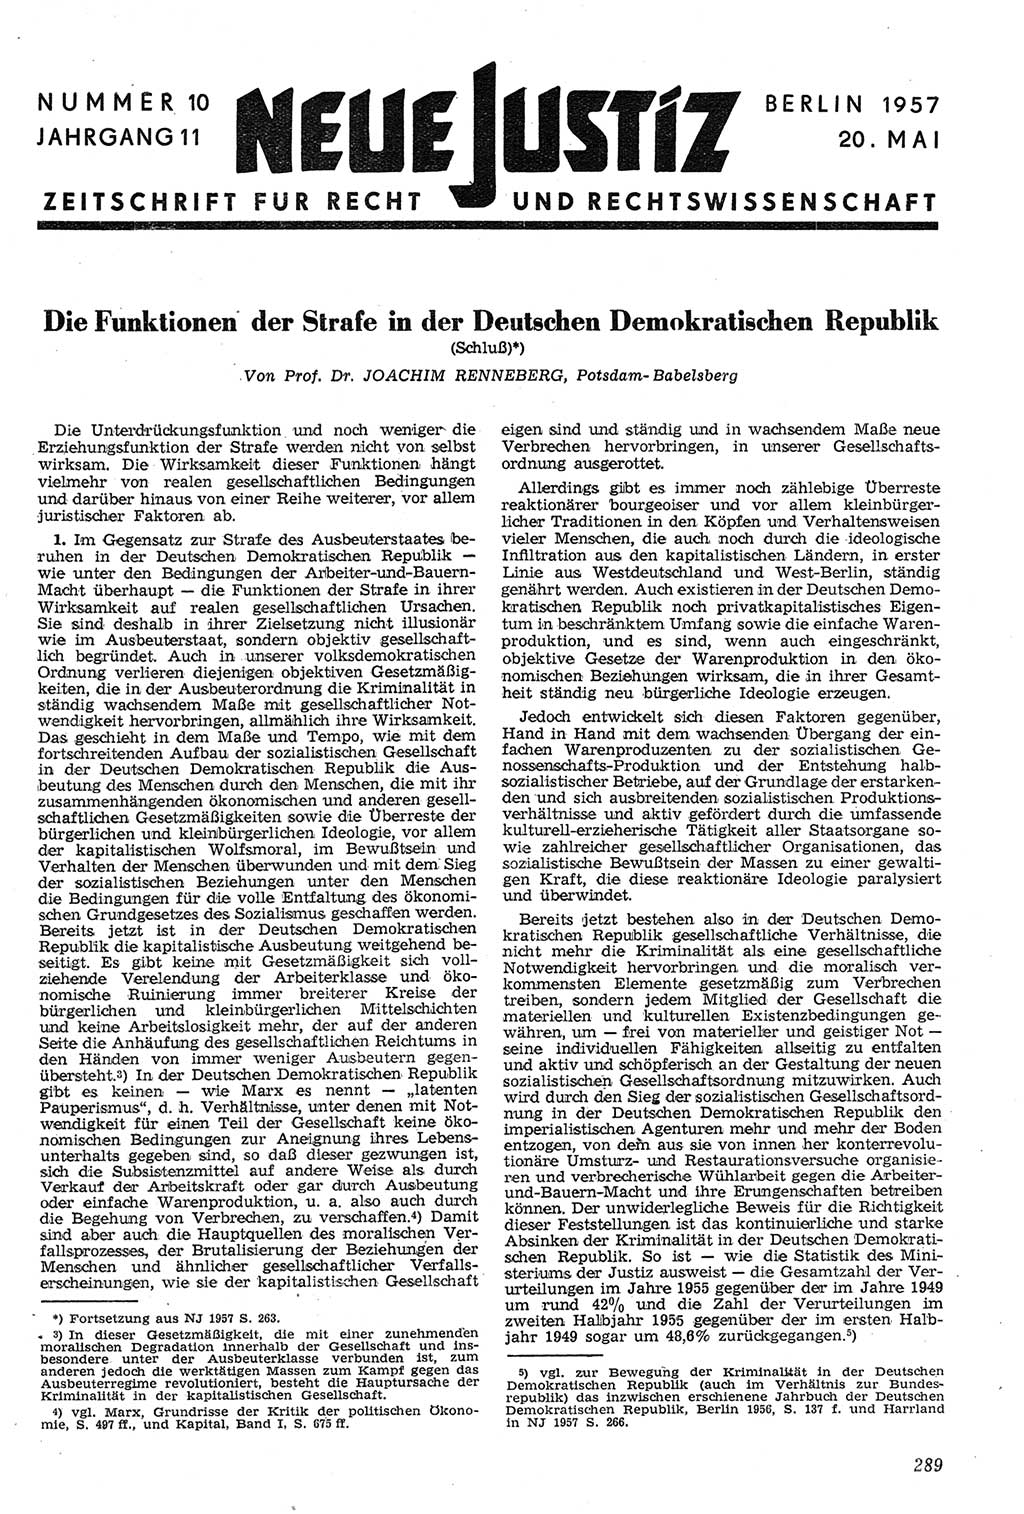 Neue Justiz (NJ), Zeitschrift für Recht und Rechtswissenschaft [Deutsche Demokratische Republik (DDR)], 11. Jahrgang 1957, Seite 289 (NJ DDR 1957, S. 289)